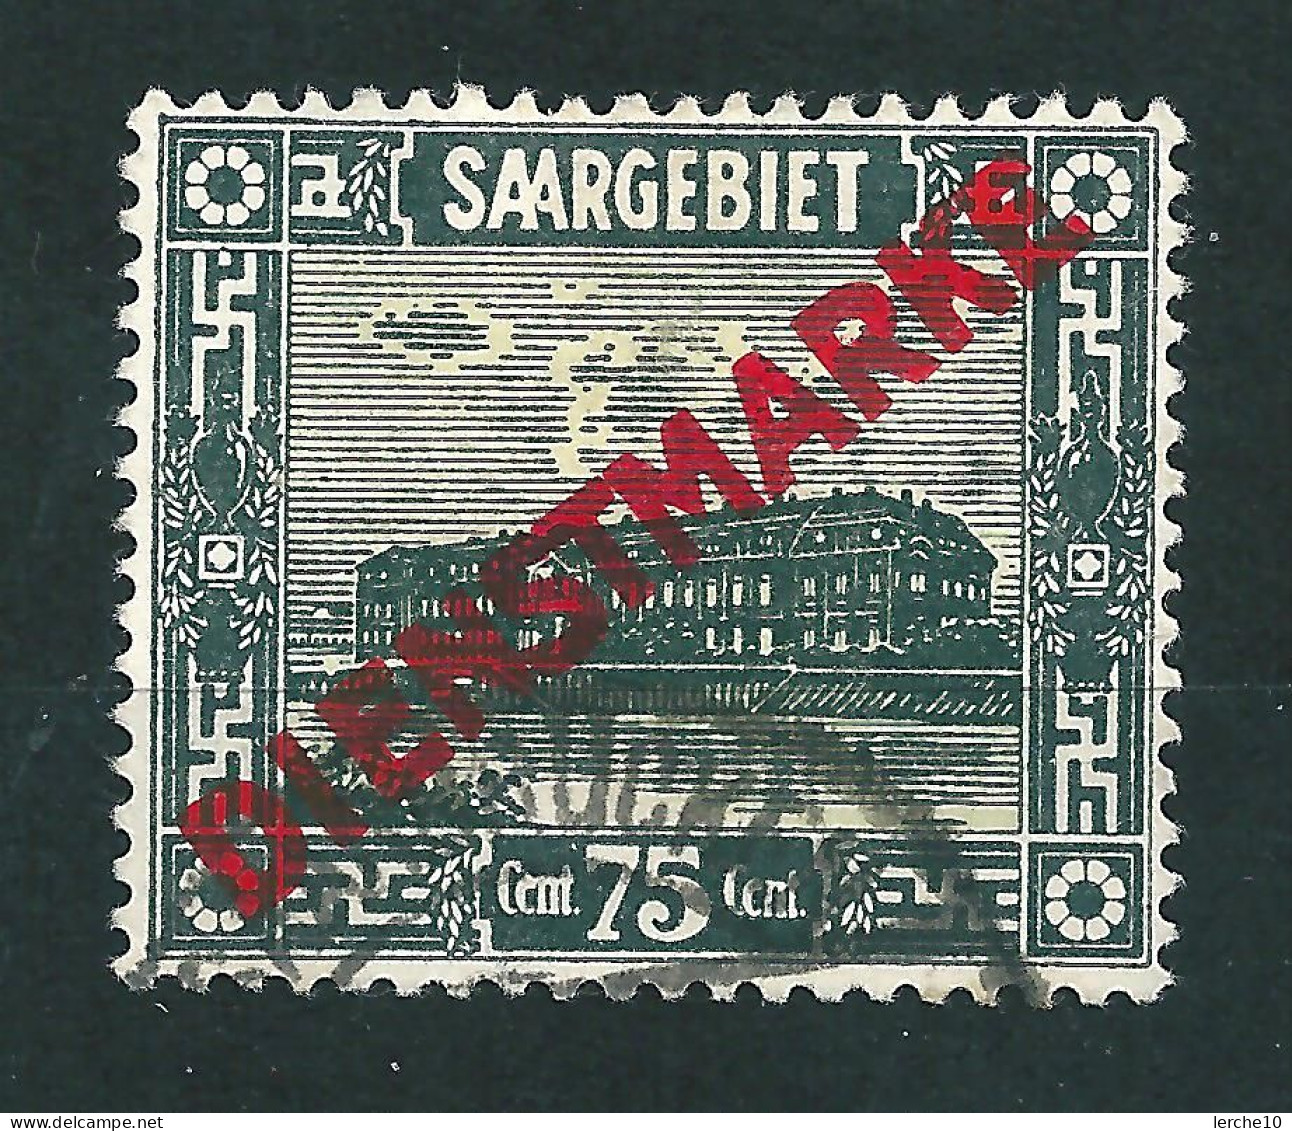 Saar MiNr. D 15 XIX   (sab29) - Dienstmarken